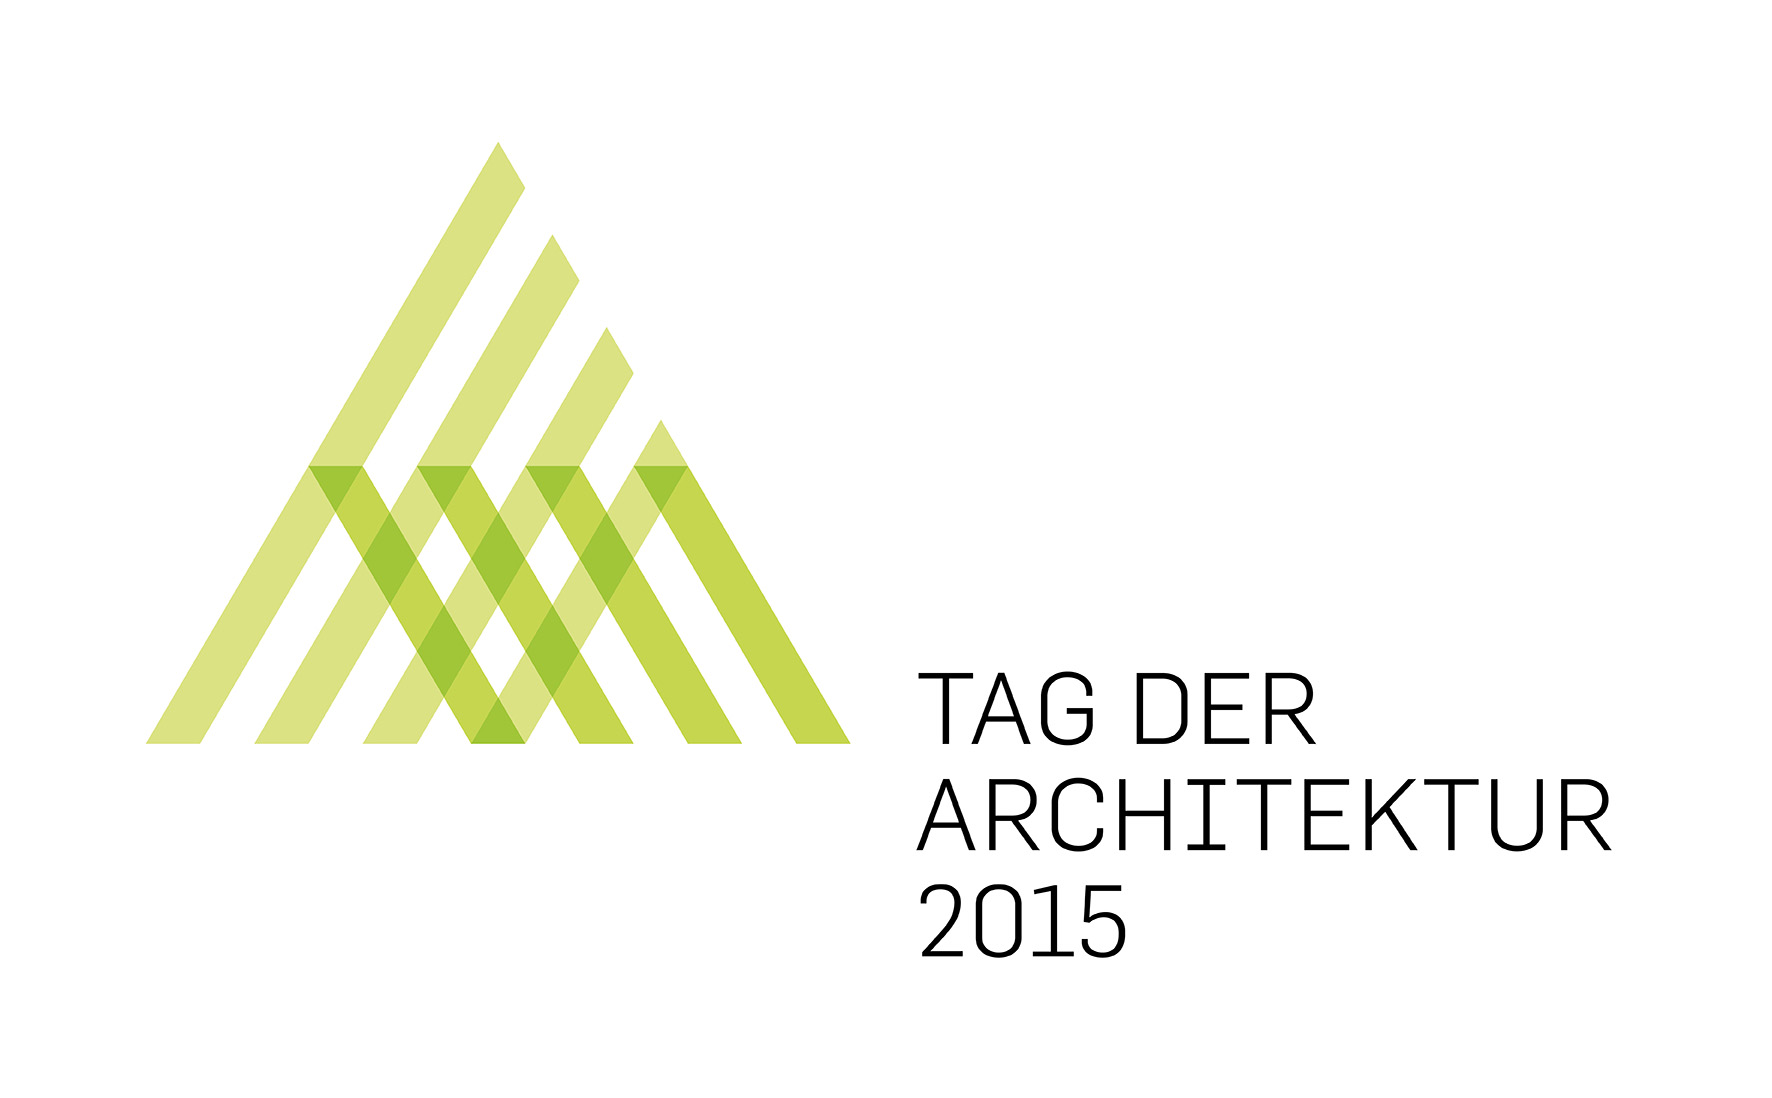 Tag der Architektur 2015